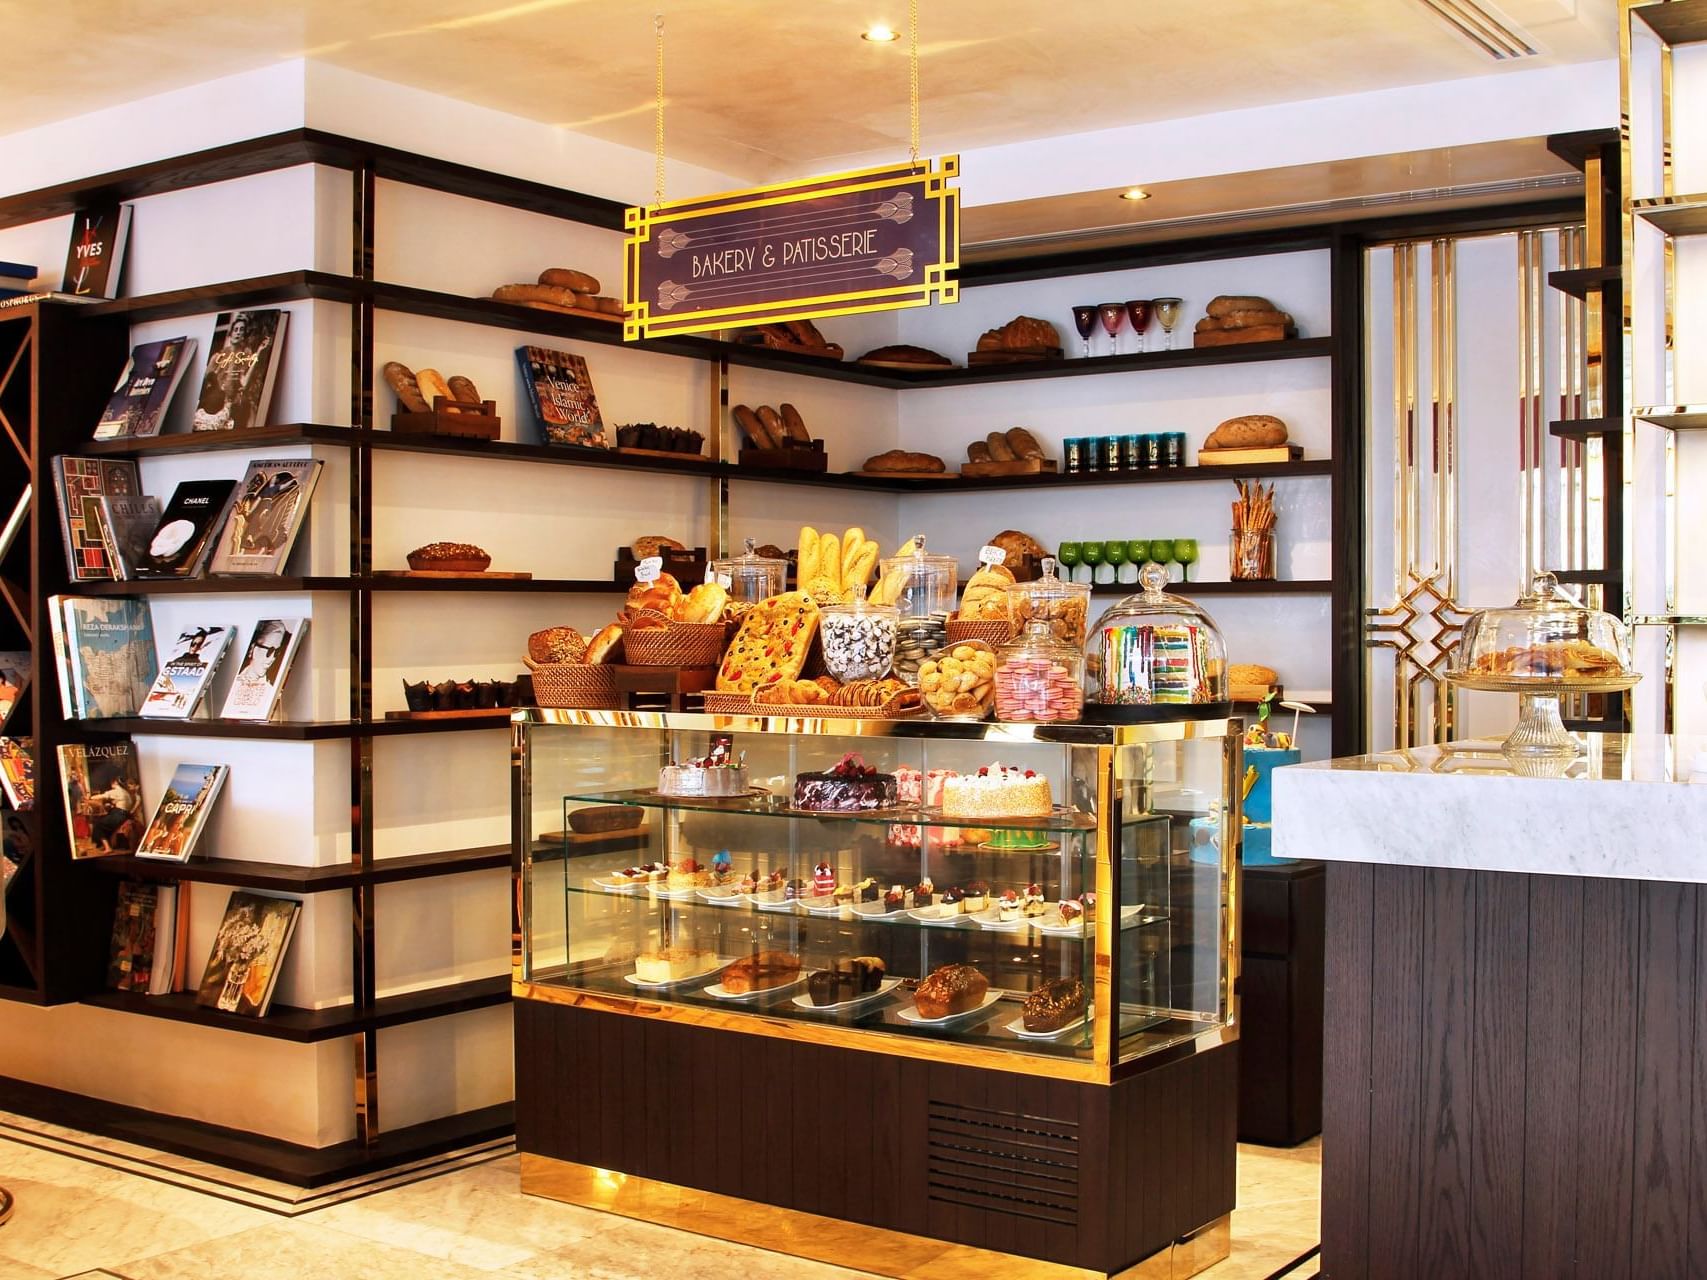 Backery and pastery shop at Tamani Marina Hotel